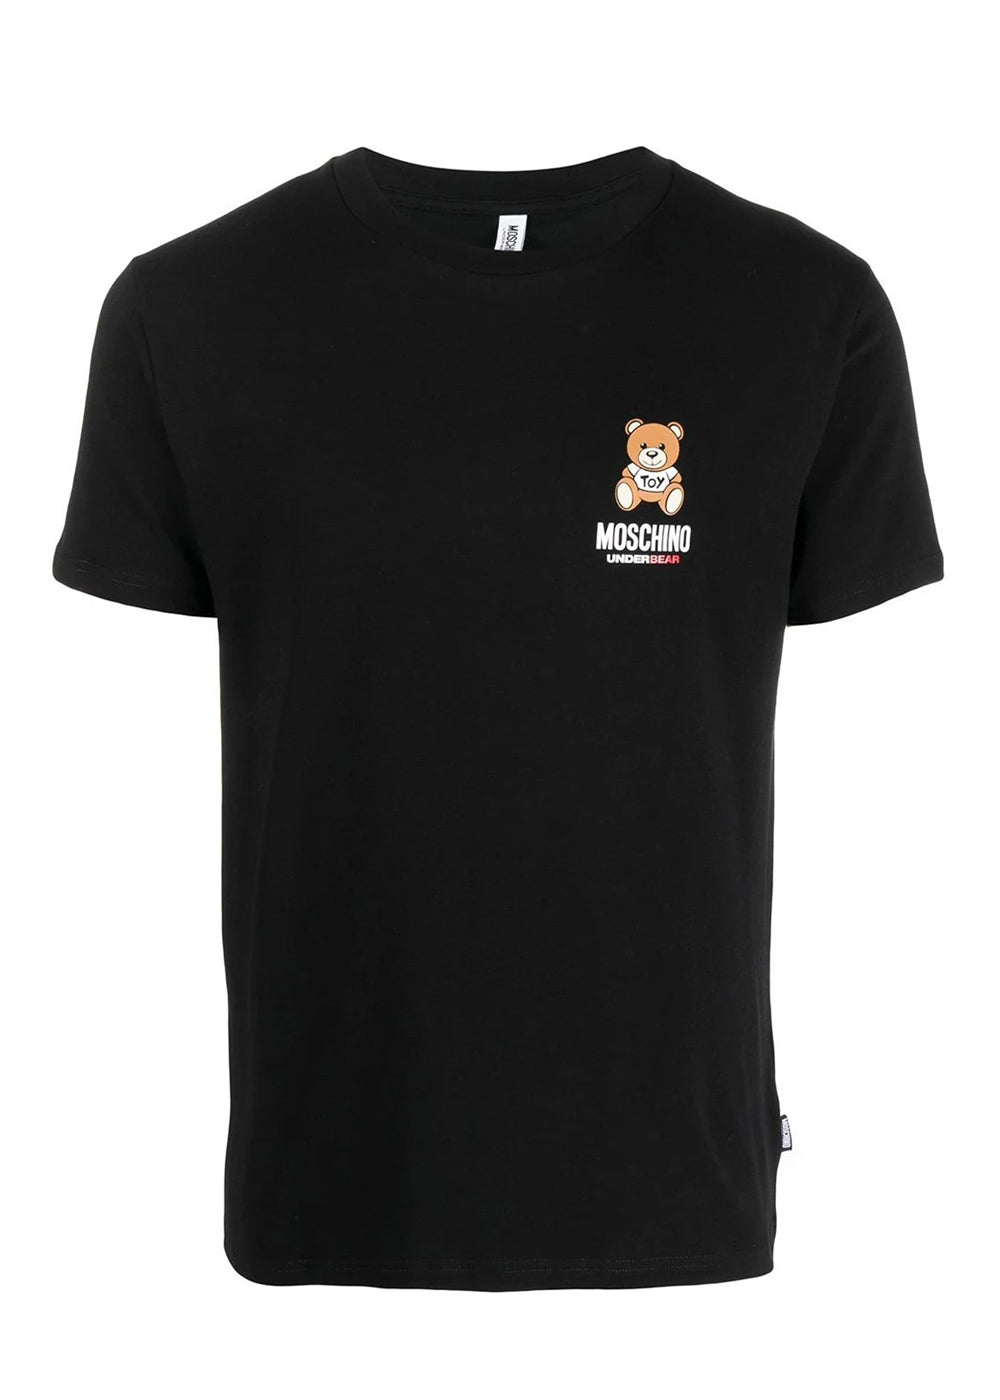 Moschino T-Shirt UNDERBEAR schwarz mit Teddybär auf der Brust